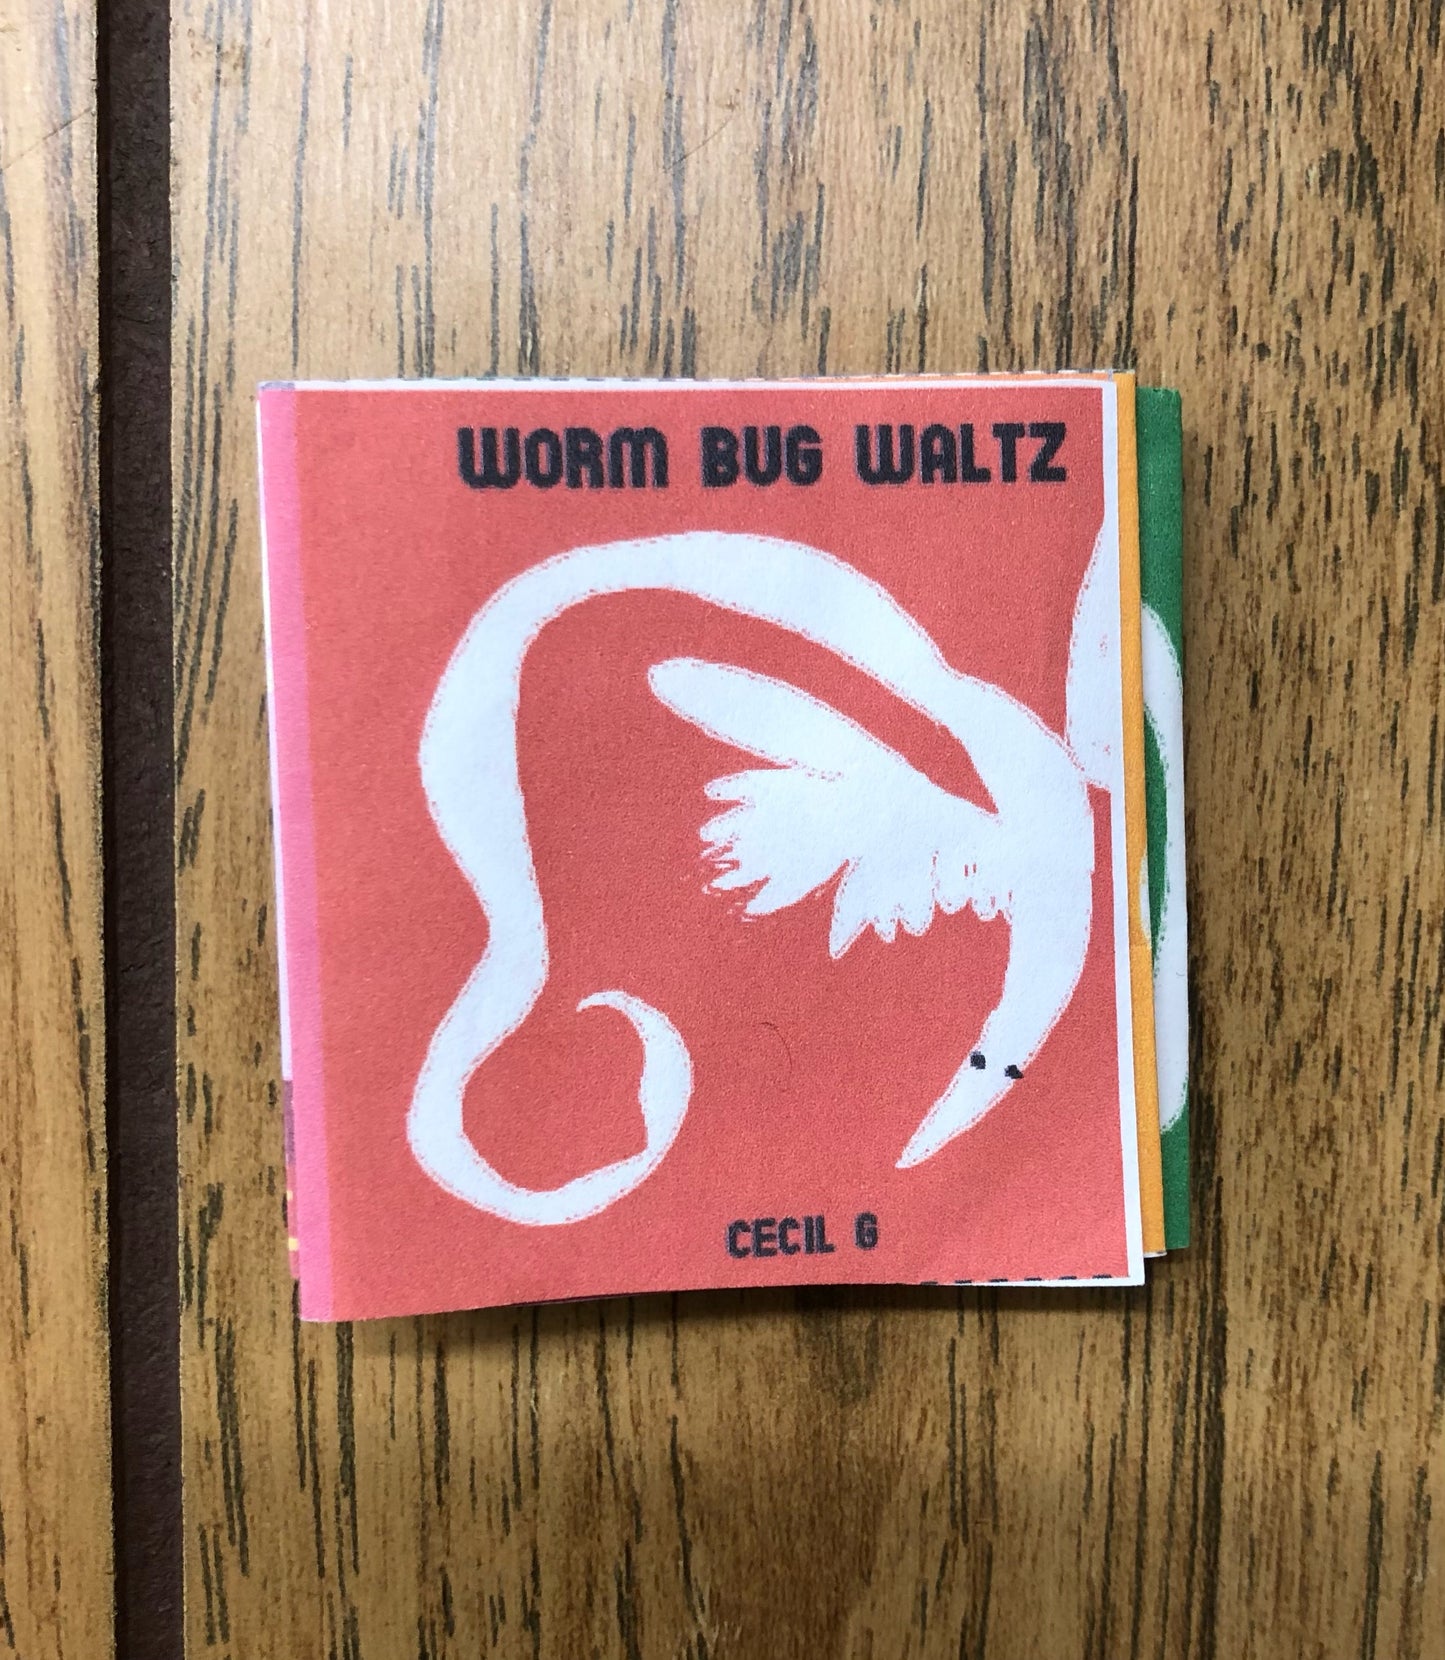 Worm Bug Waltz